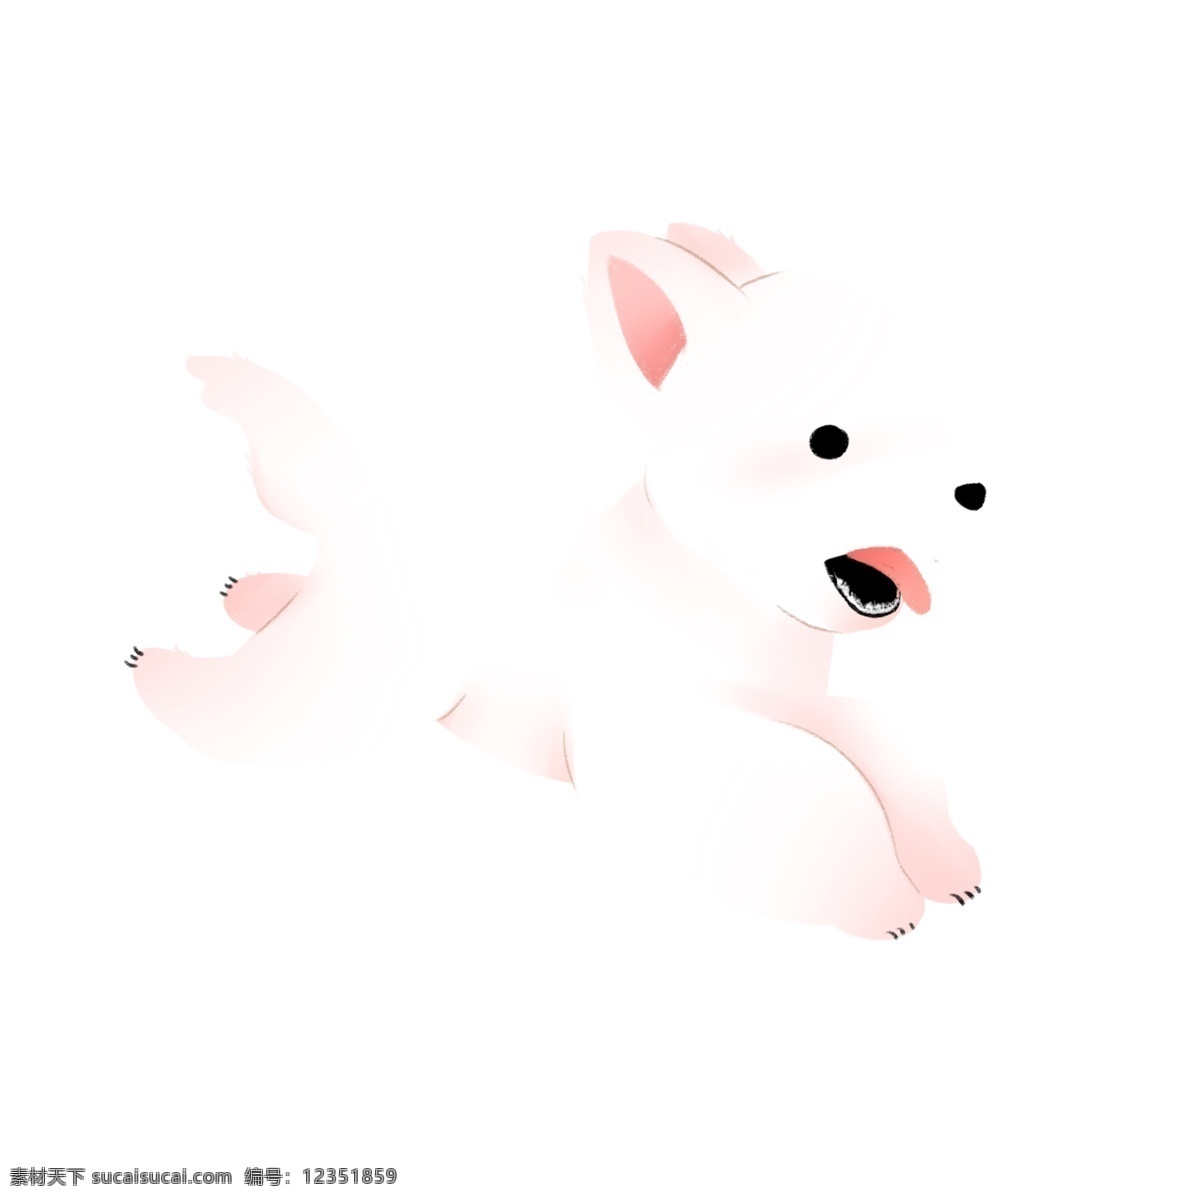 呆 萌 可爱 白色 小狗 动物 手绘 绘画 卡通 简约 小清新 装饰 彩色